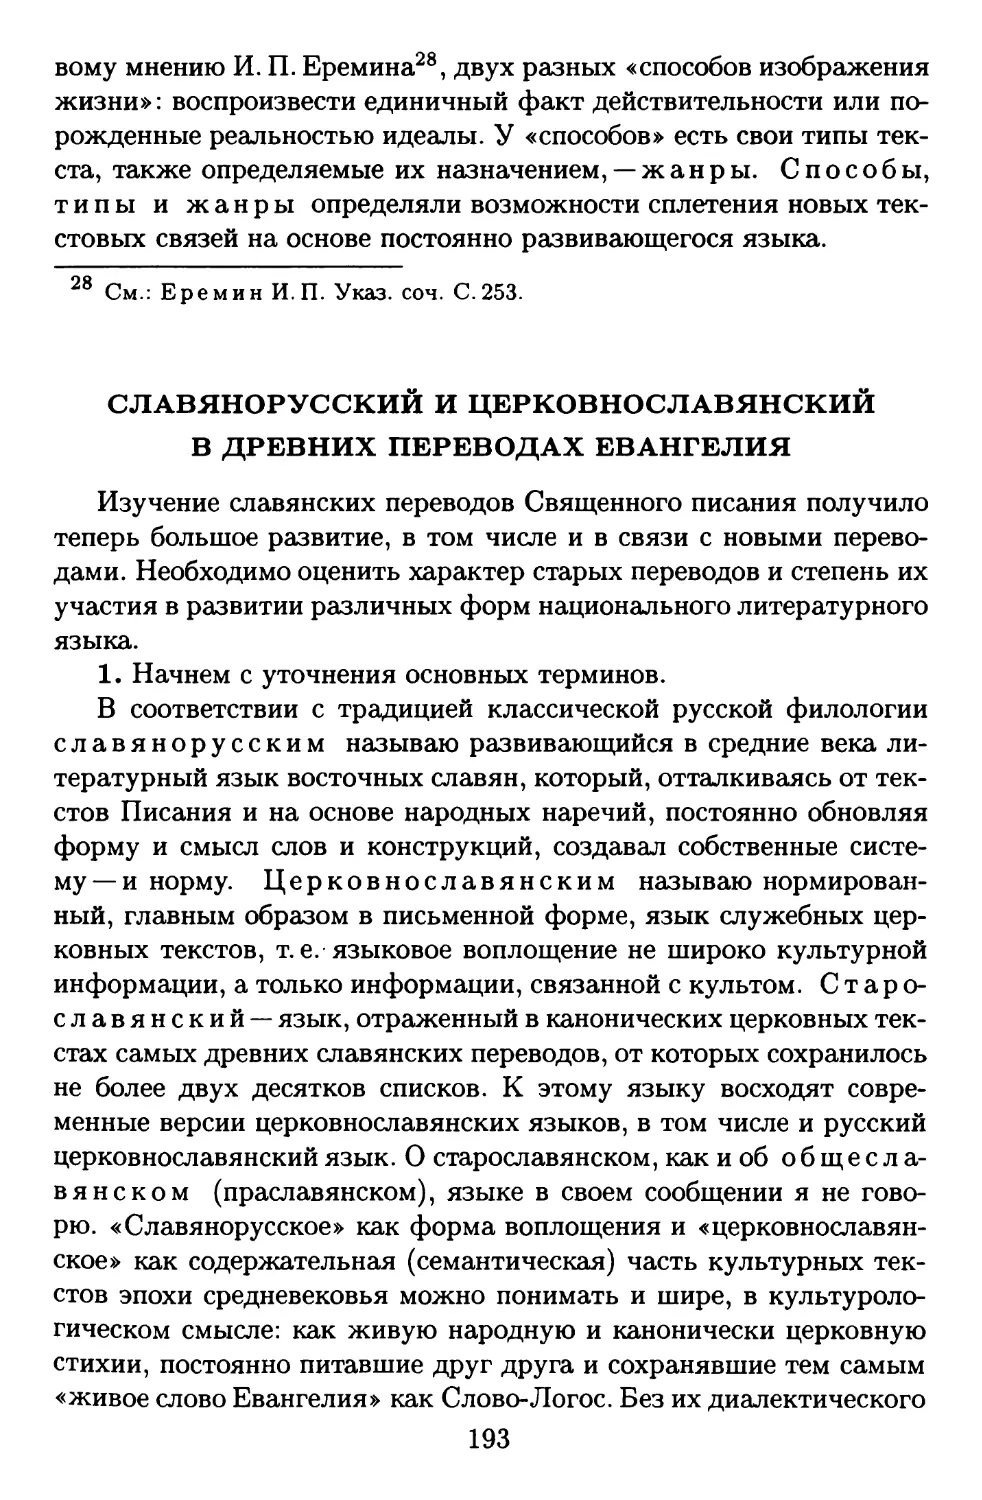 Славянорусский и церковнославянский в древних переводахЕвангелия